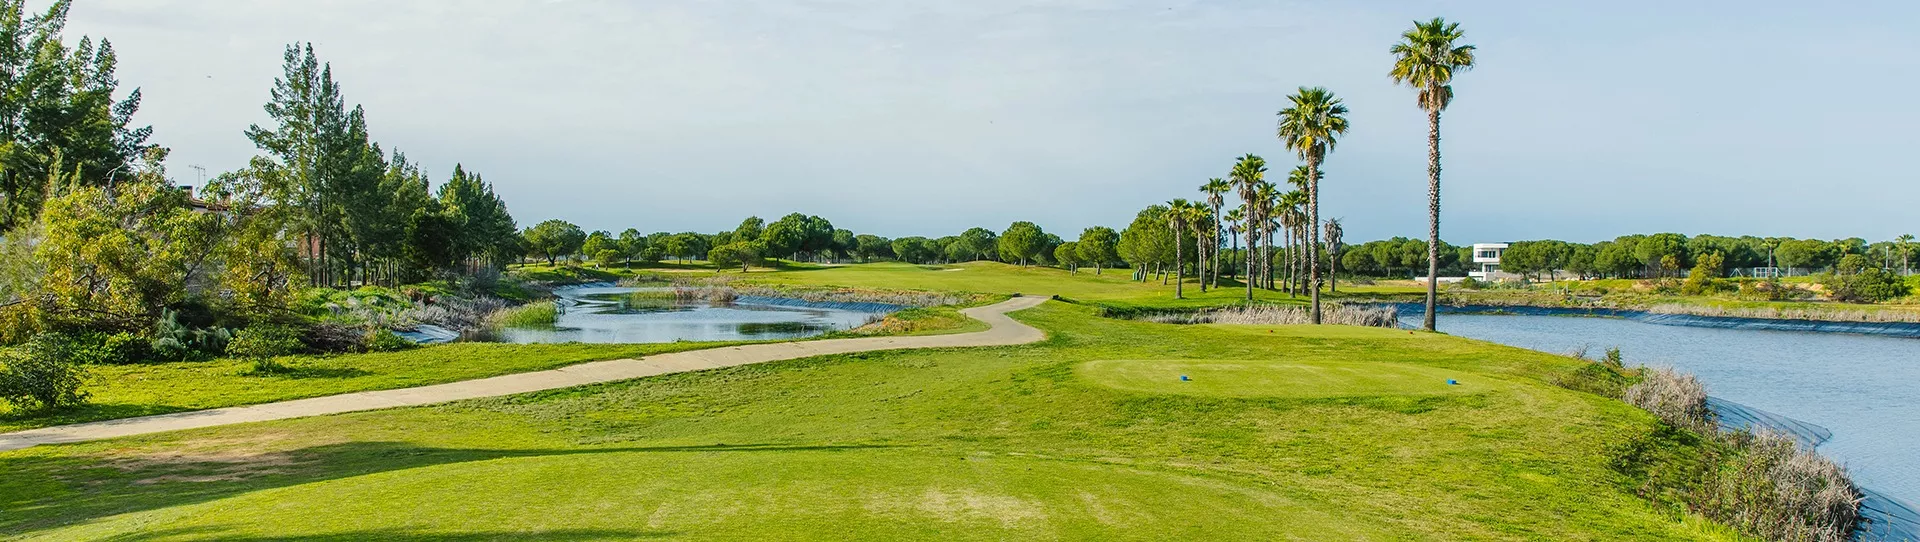 Spain golf courses - La Monacilla Golf - Photo 1